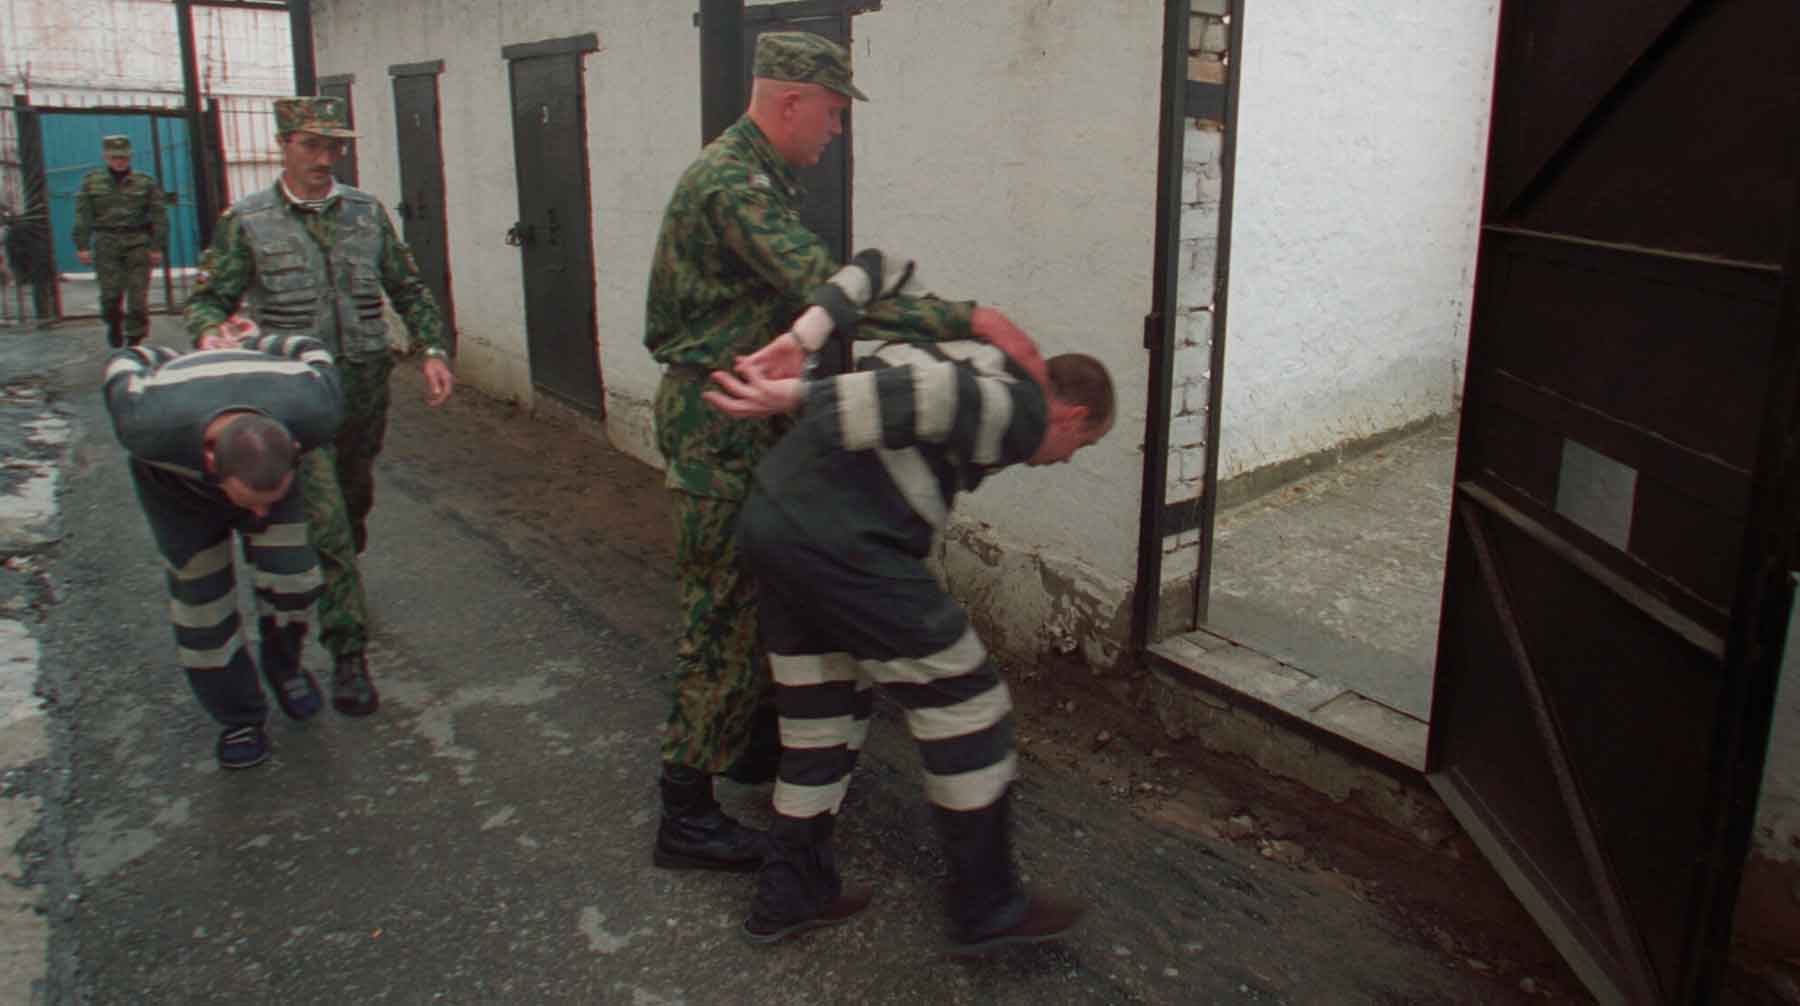 Вопрос применения силы к заключенным и подследственным «взят на особый контроль», заявили в ведомстве Фото: © GLOBAL LOOK press / Pravda Komsomolskaya